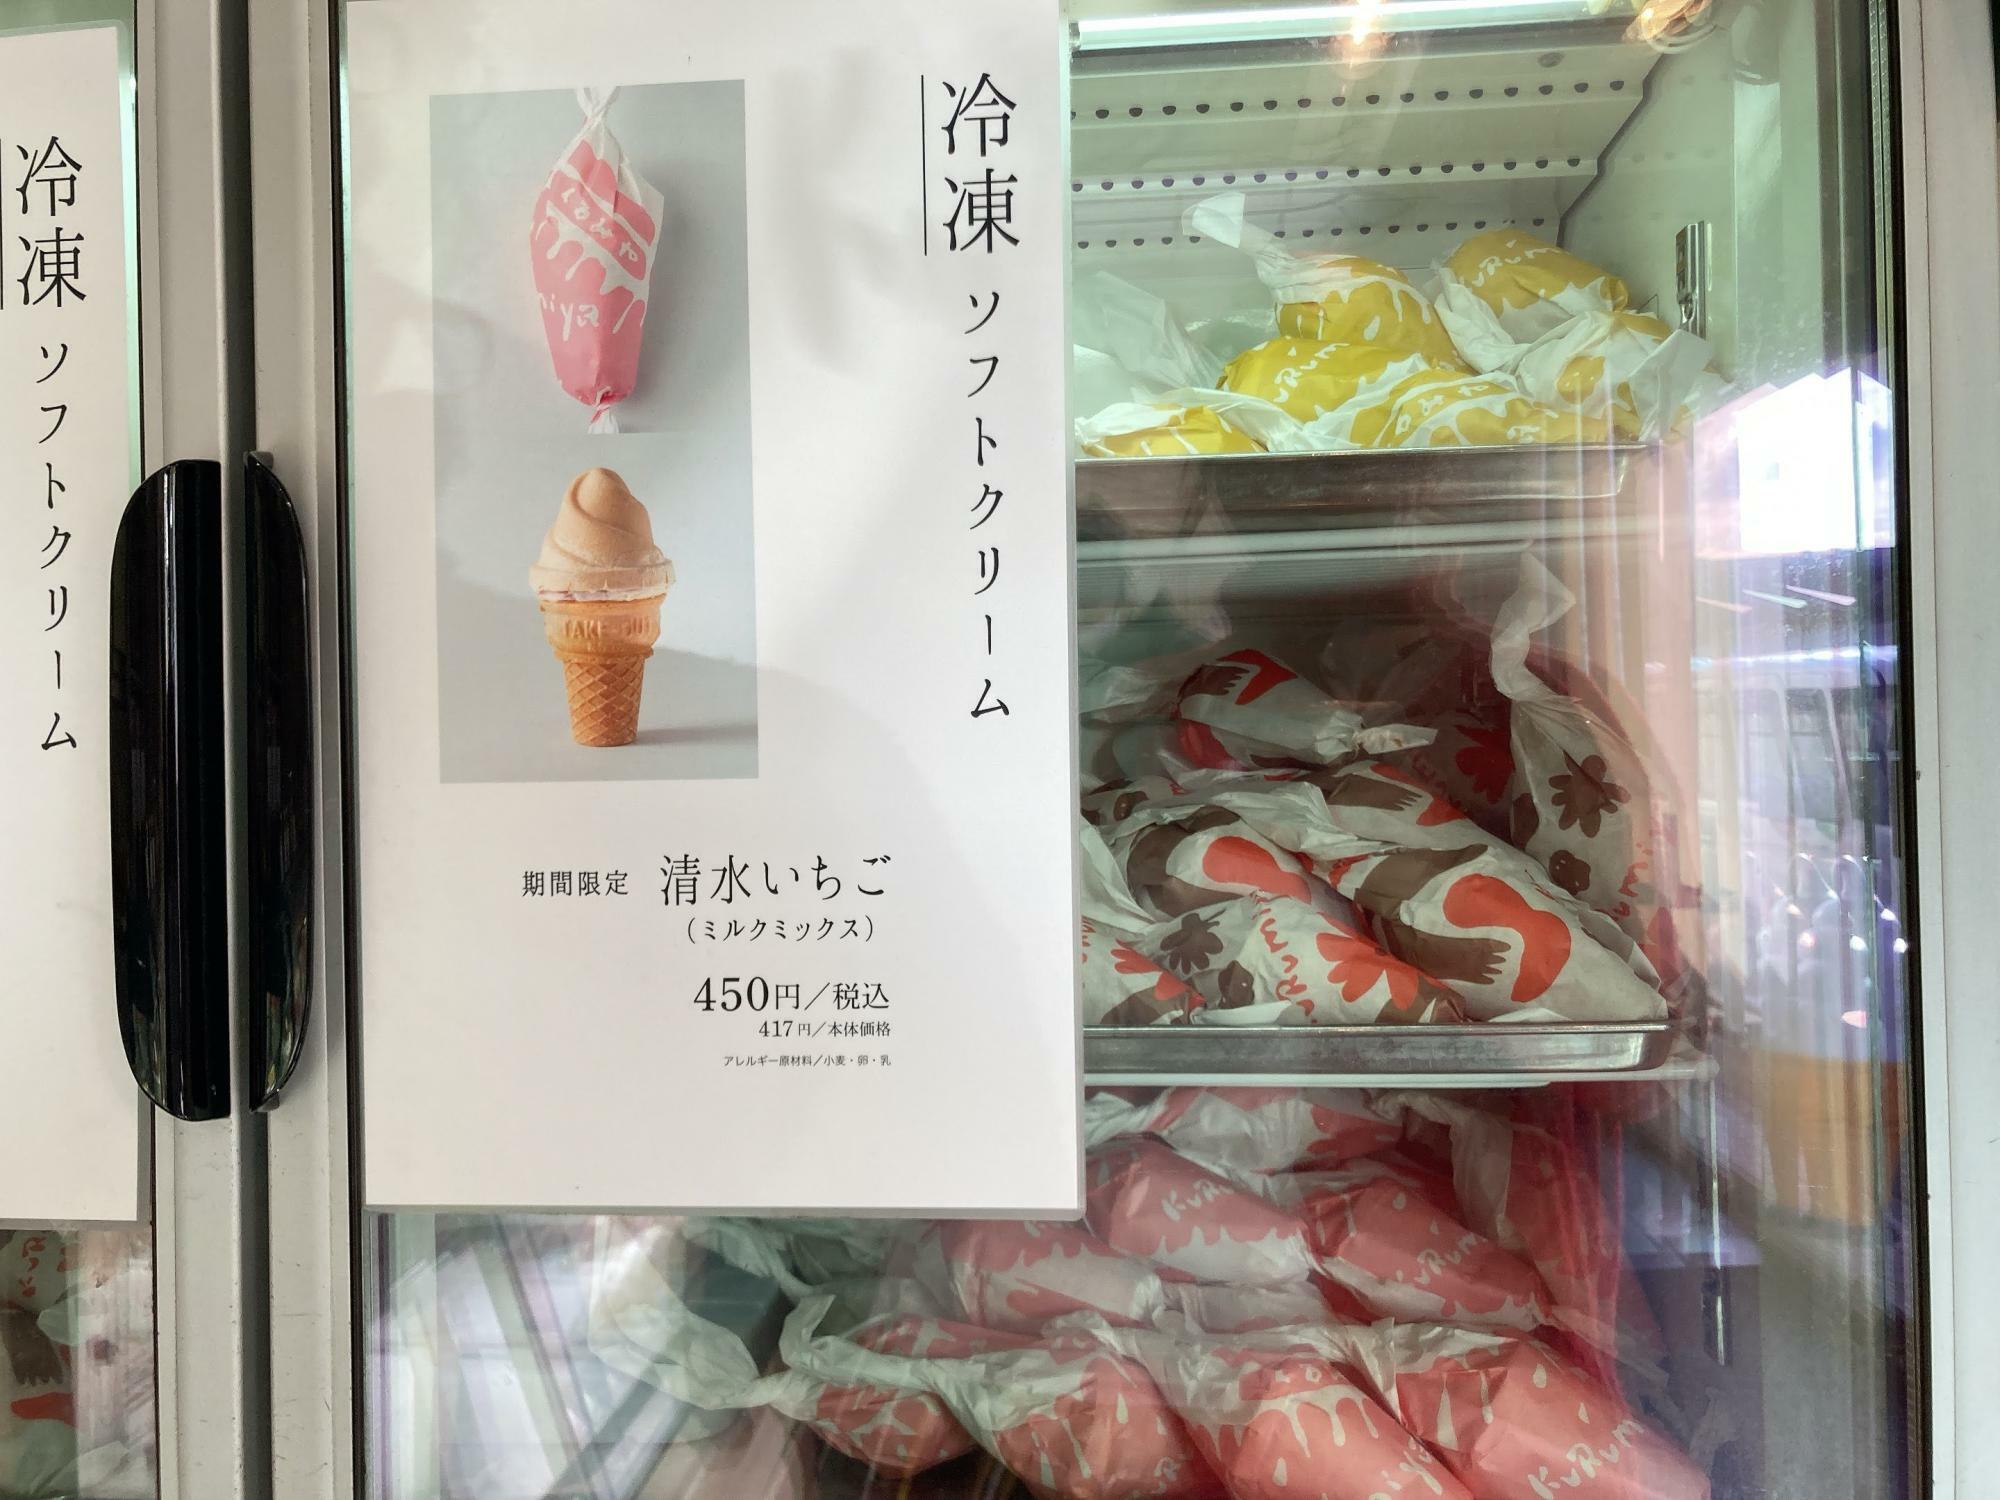 冷凍ソフトクリーム「清水いちご」